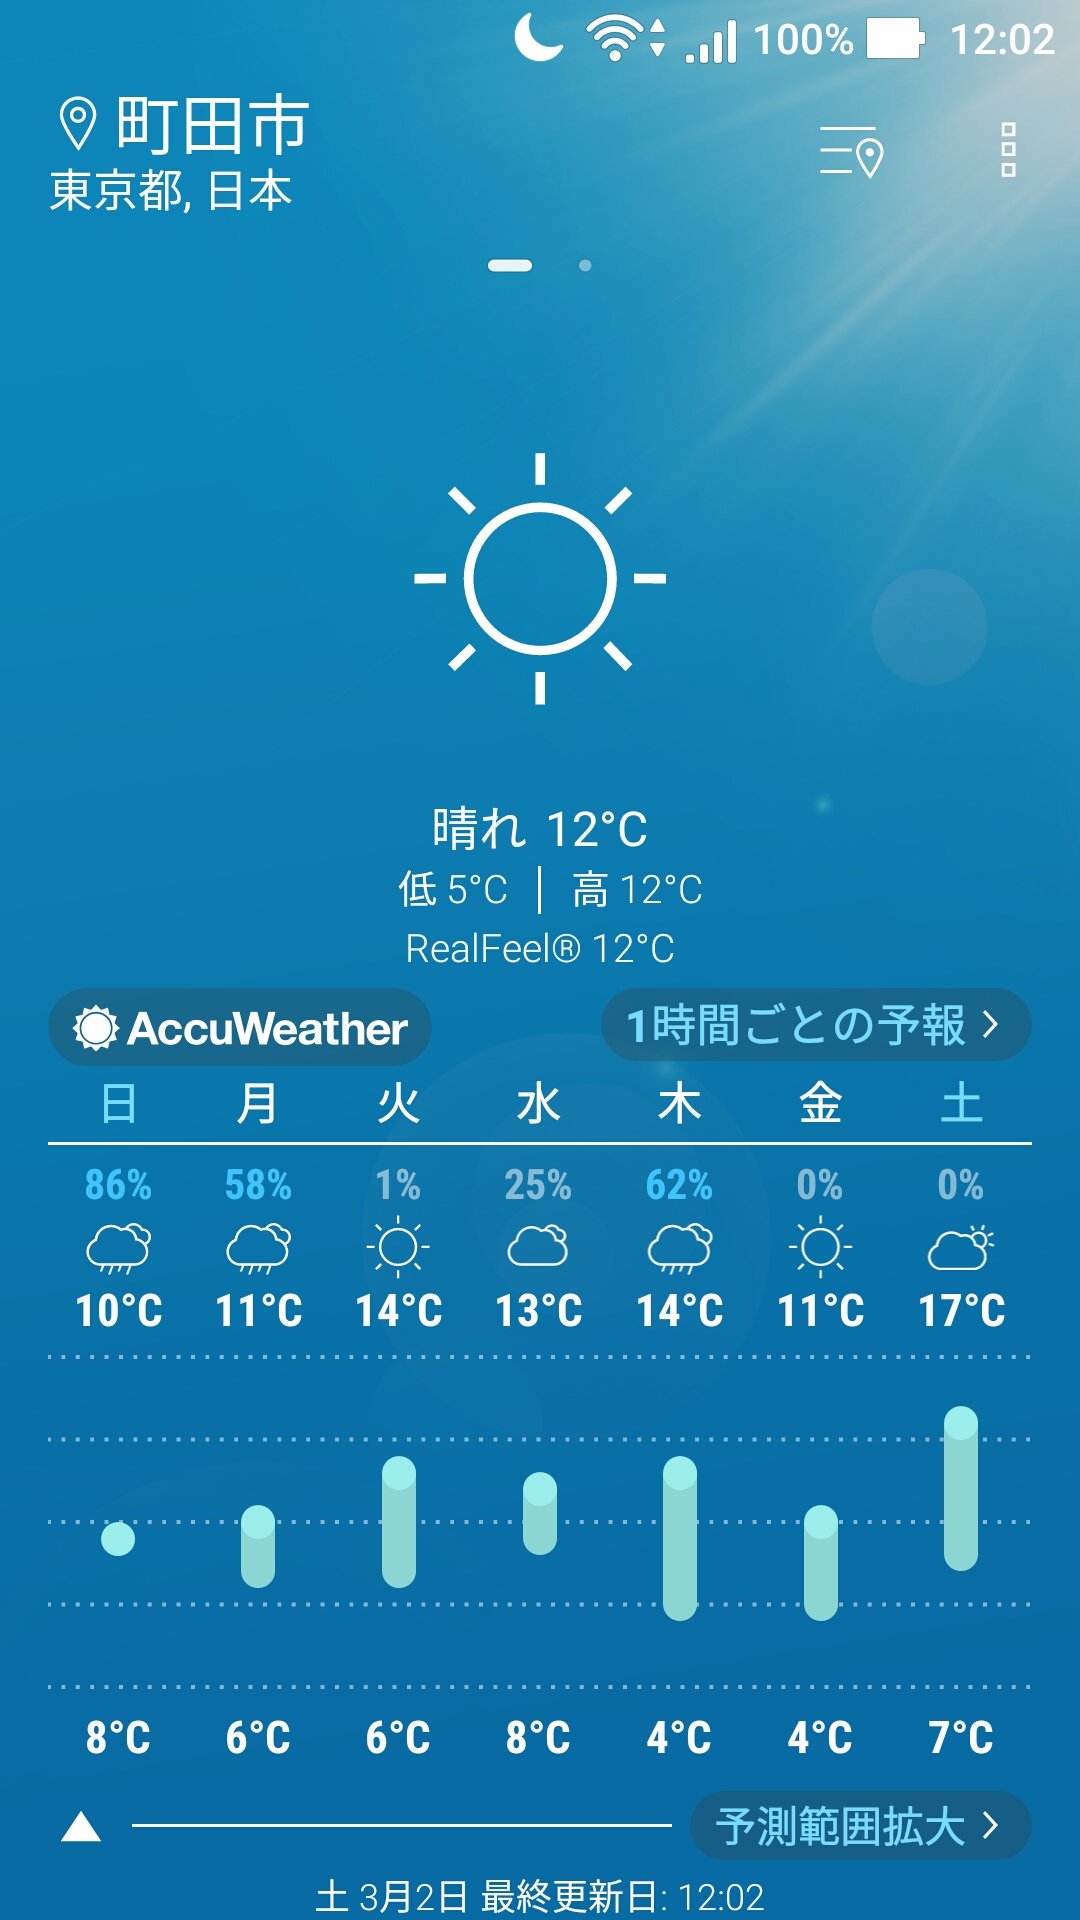 町田高校帰宅部 こんにちは 3月2日土曜日です それでは天気予報です 東京都町田市現在の天気は晴れ 気温12 です もう最高 気温です 以上お天気でした T Co 2f1ygusk0x Twitter